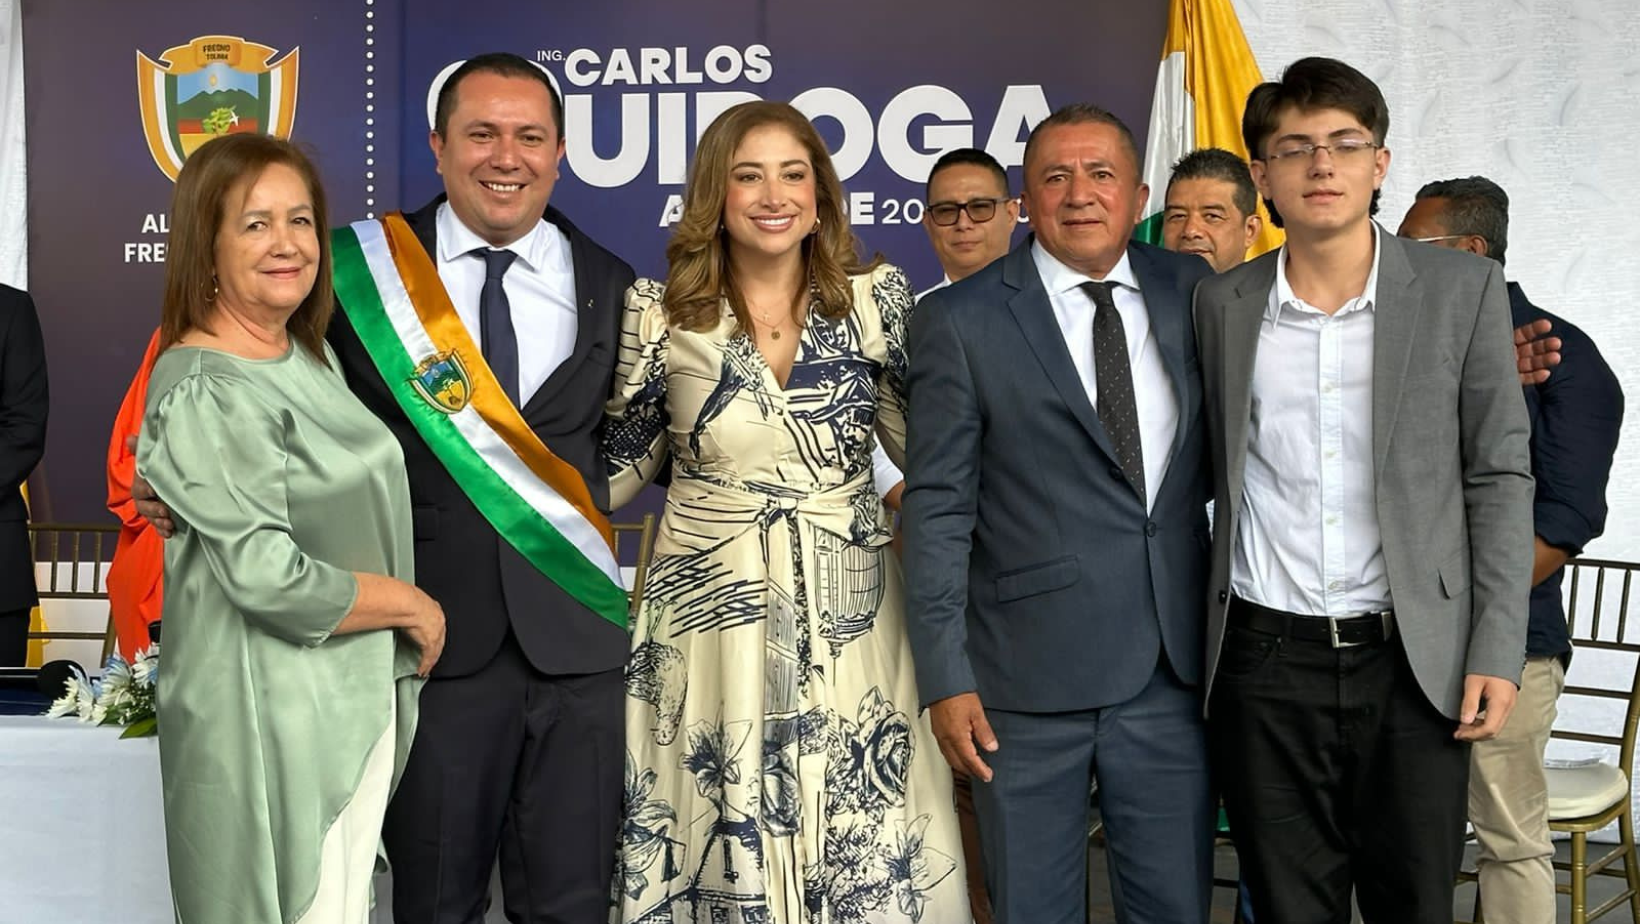 Fresno da la bienvenida a Carlos Quiroga como su nuevo alcalde municipal